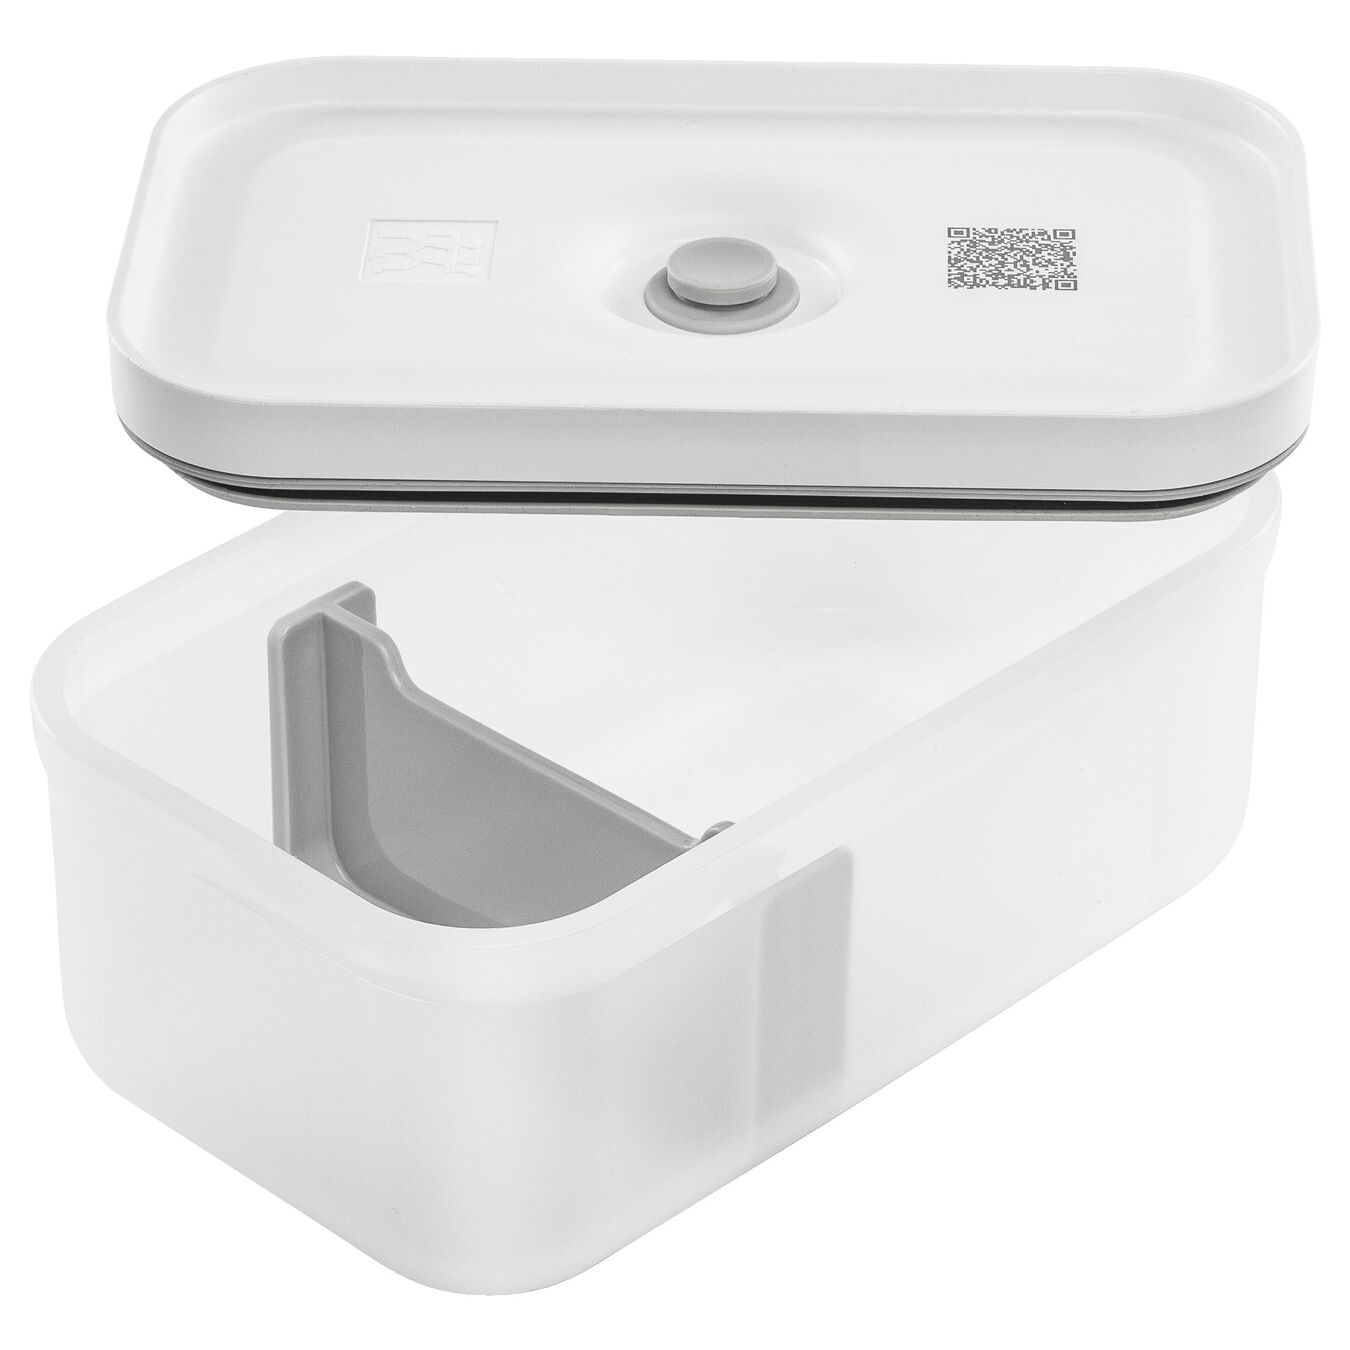 Lunch box M, Plastique, semi transparent-Gris,,large 5